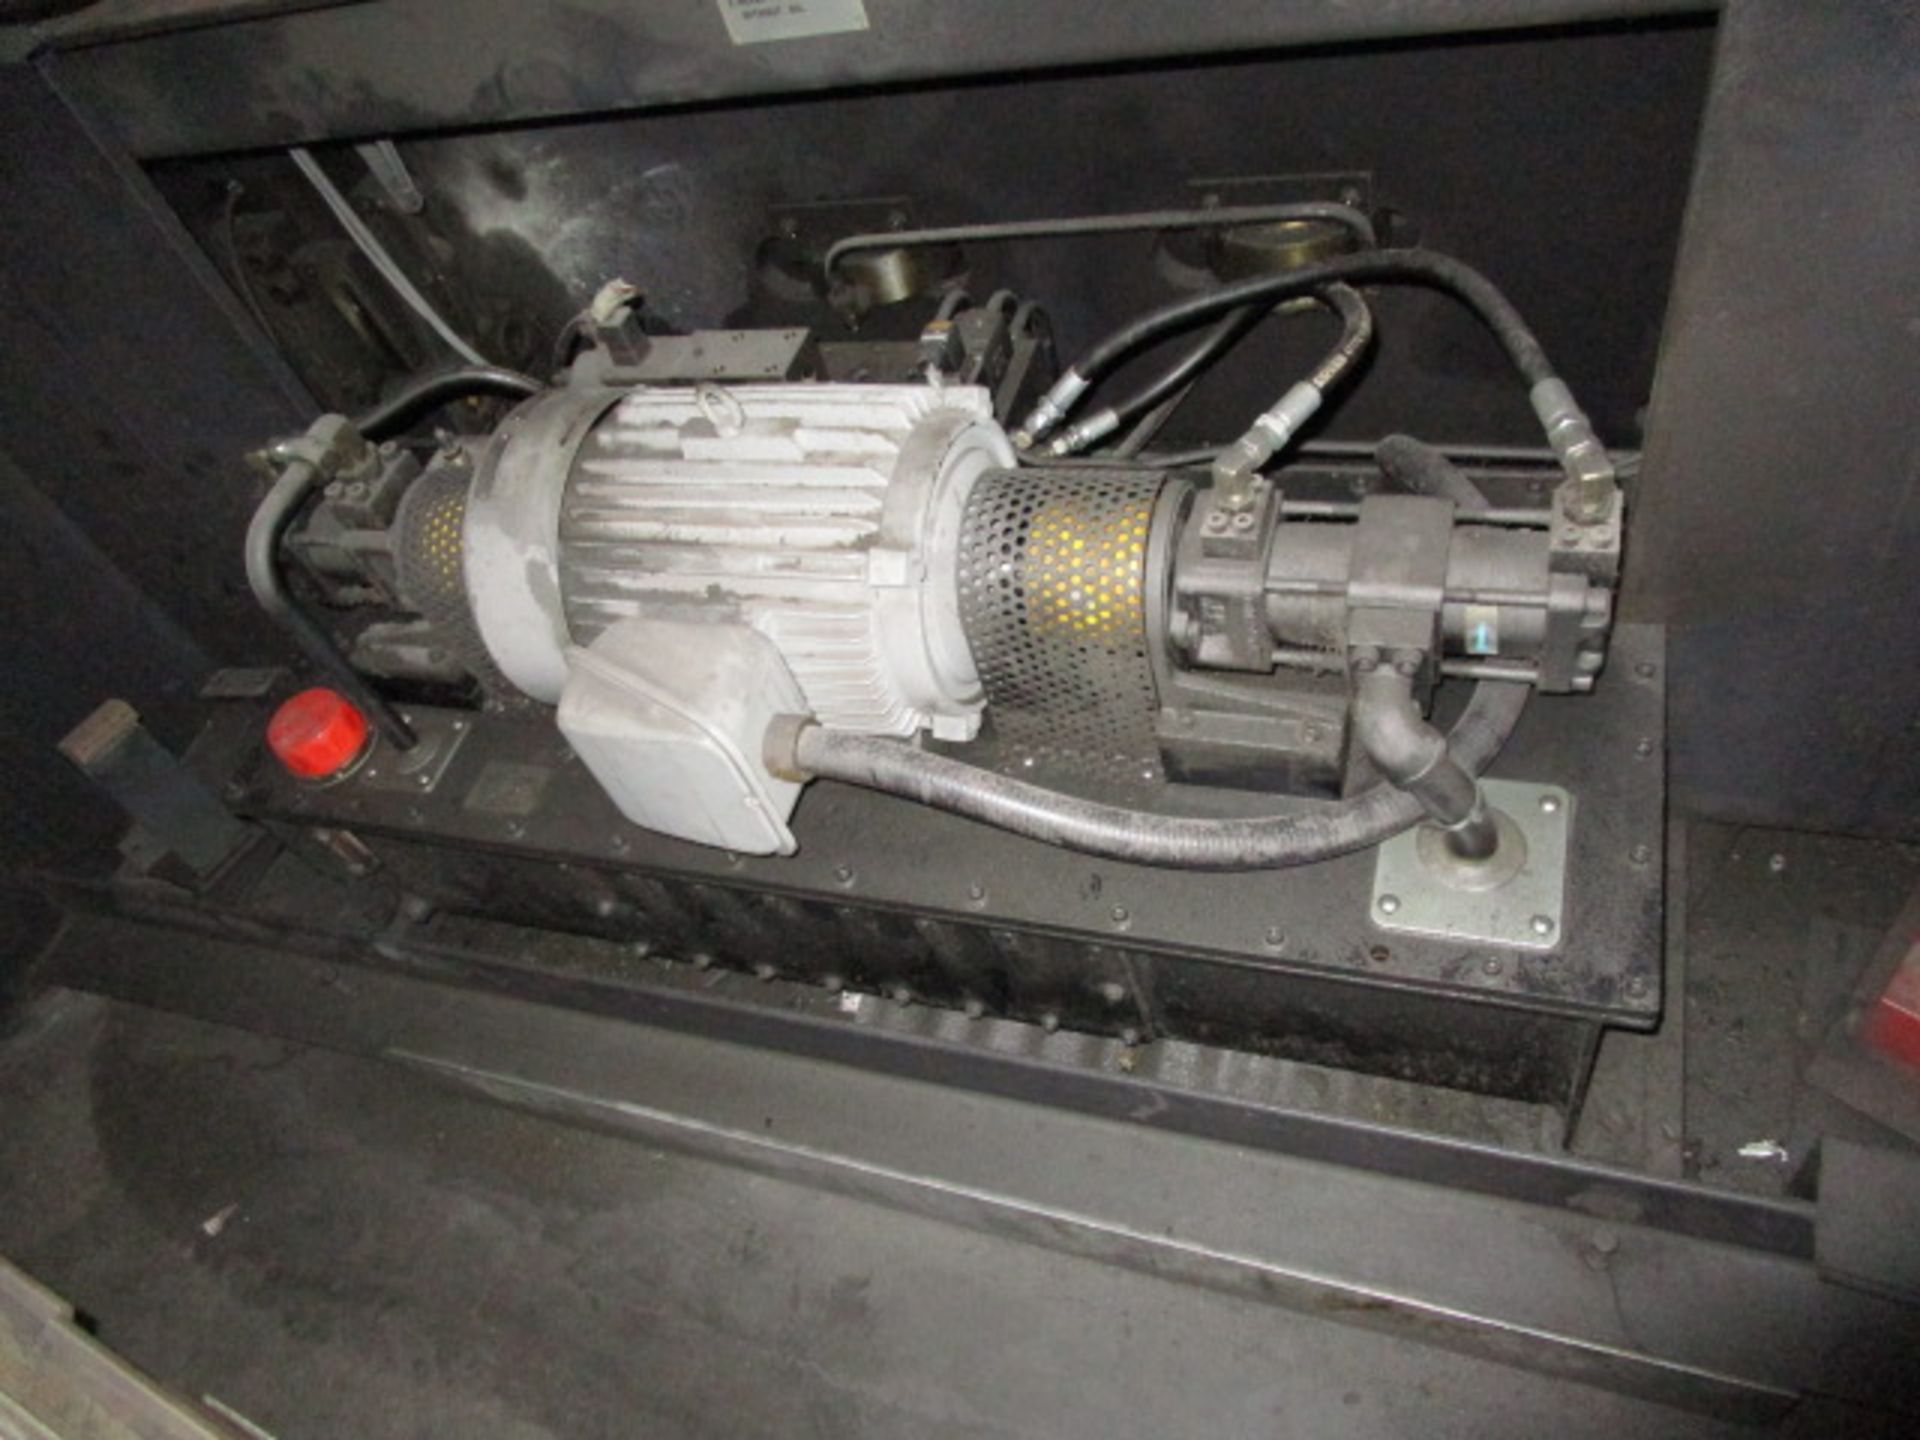 Amada FBD-8025NT Press Brake Machine, Model FBD-8025NT, Serial Number 80250388 - Image 7 of 22